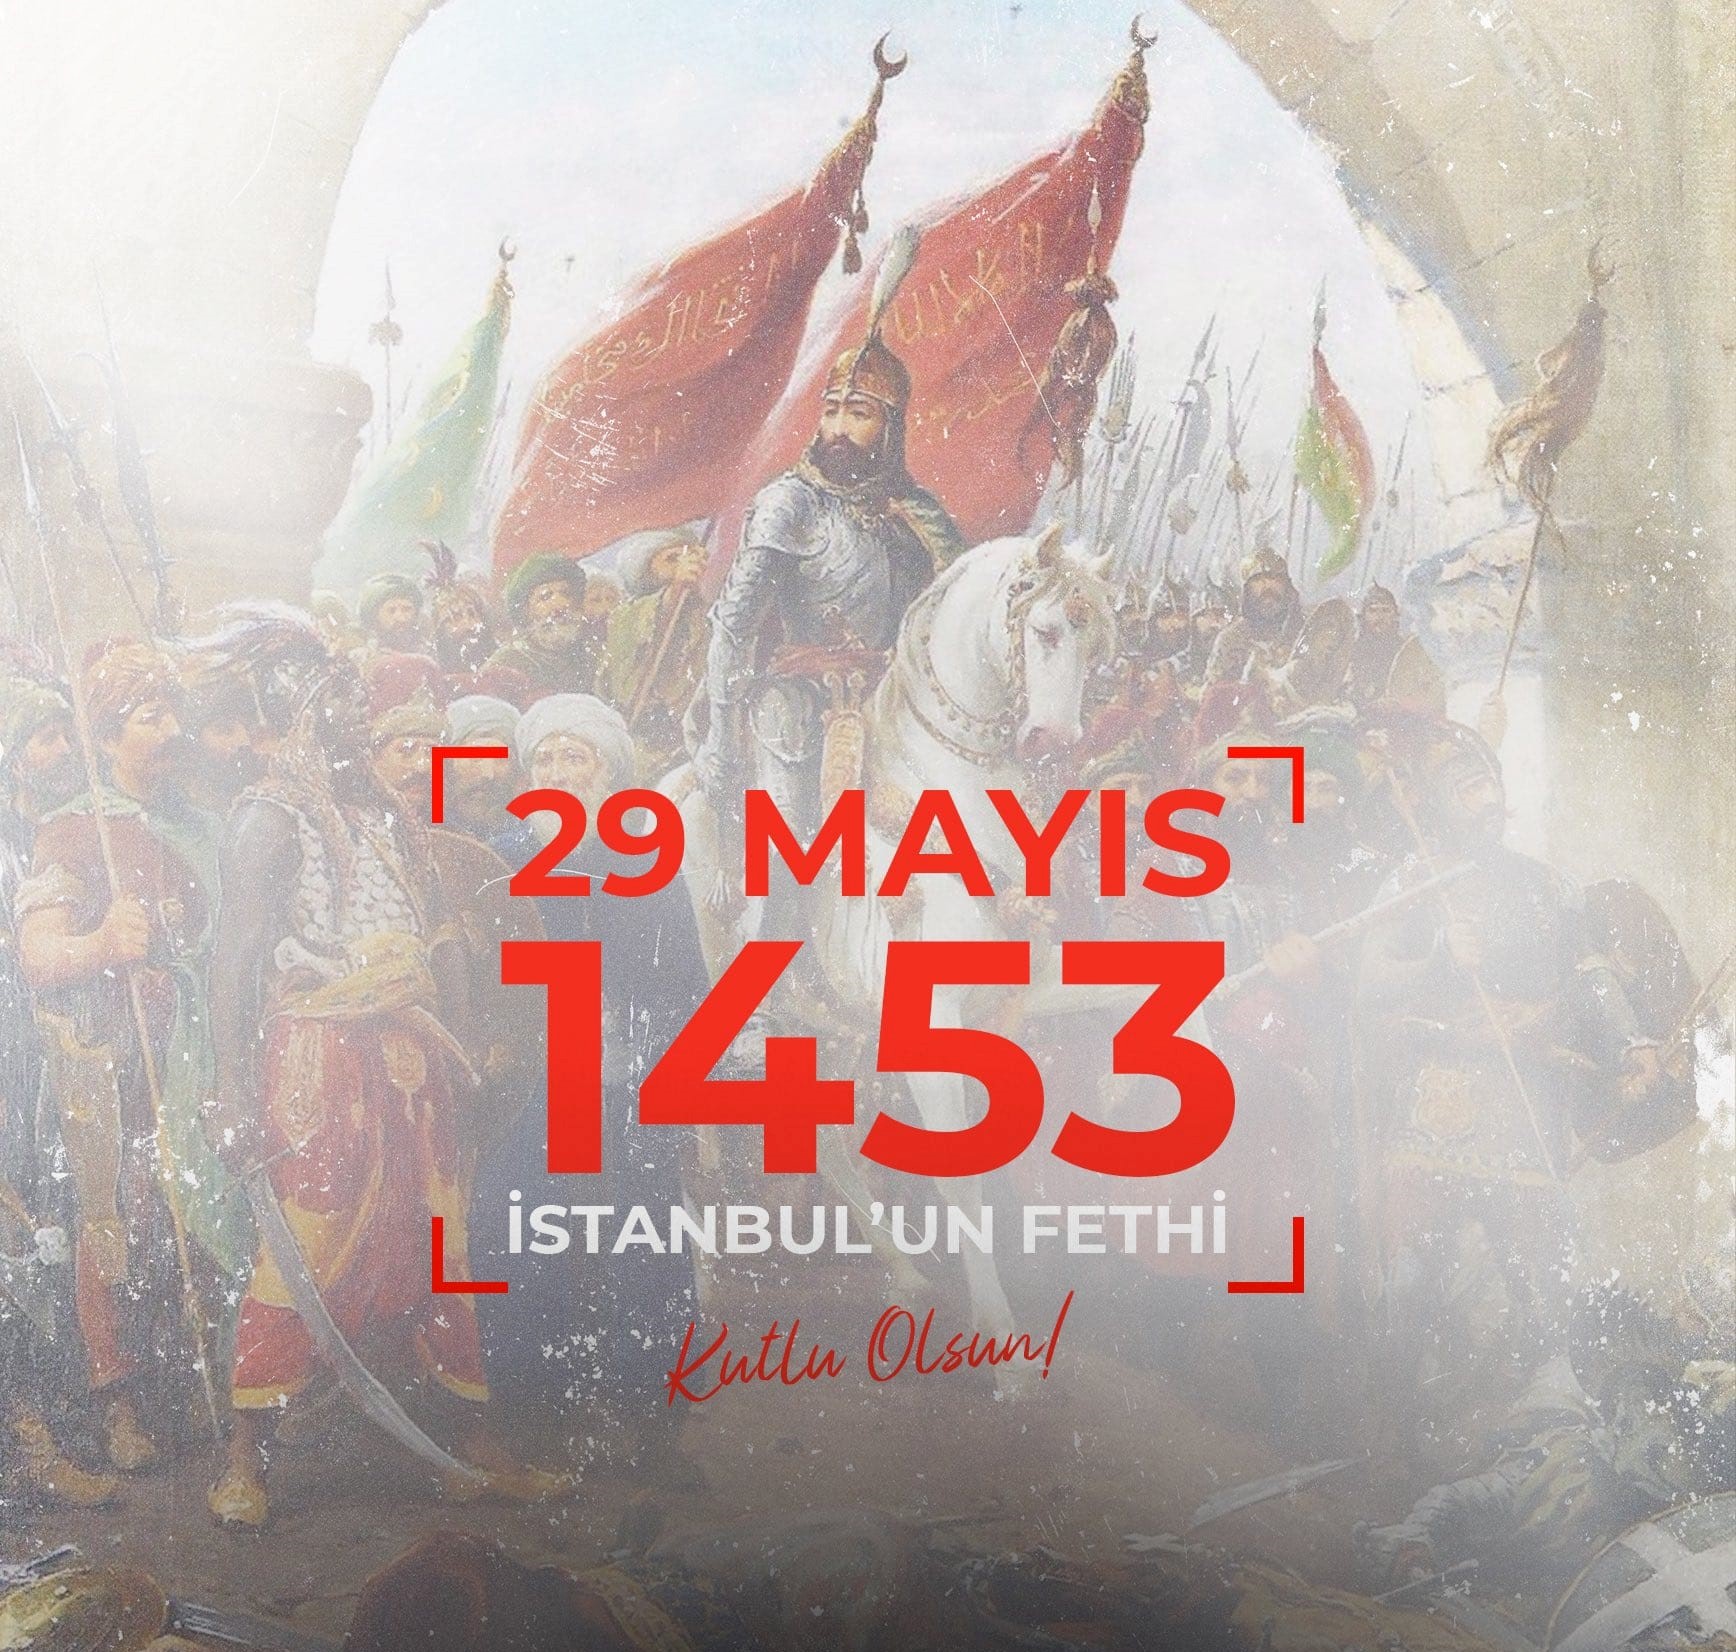 29 Mayıs 1453 İstanbul'un Fethinin 570. Yıldönümü Kutlu Olsun!